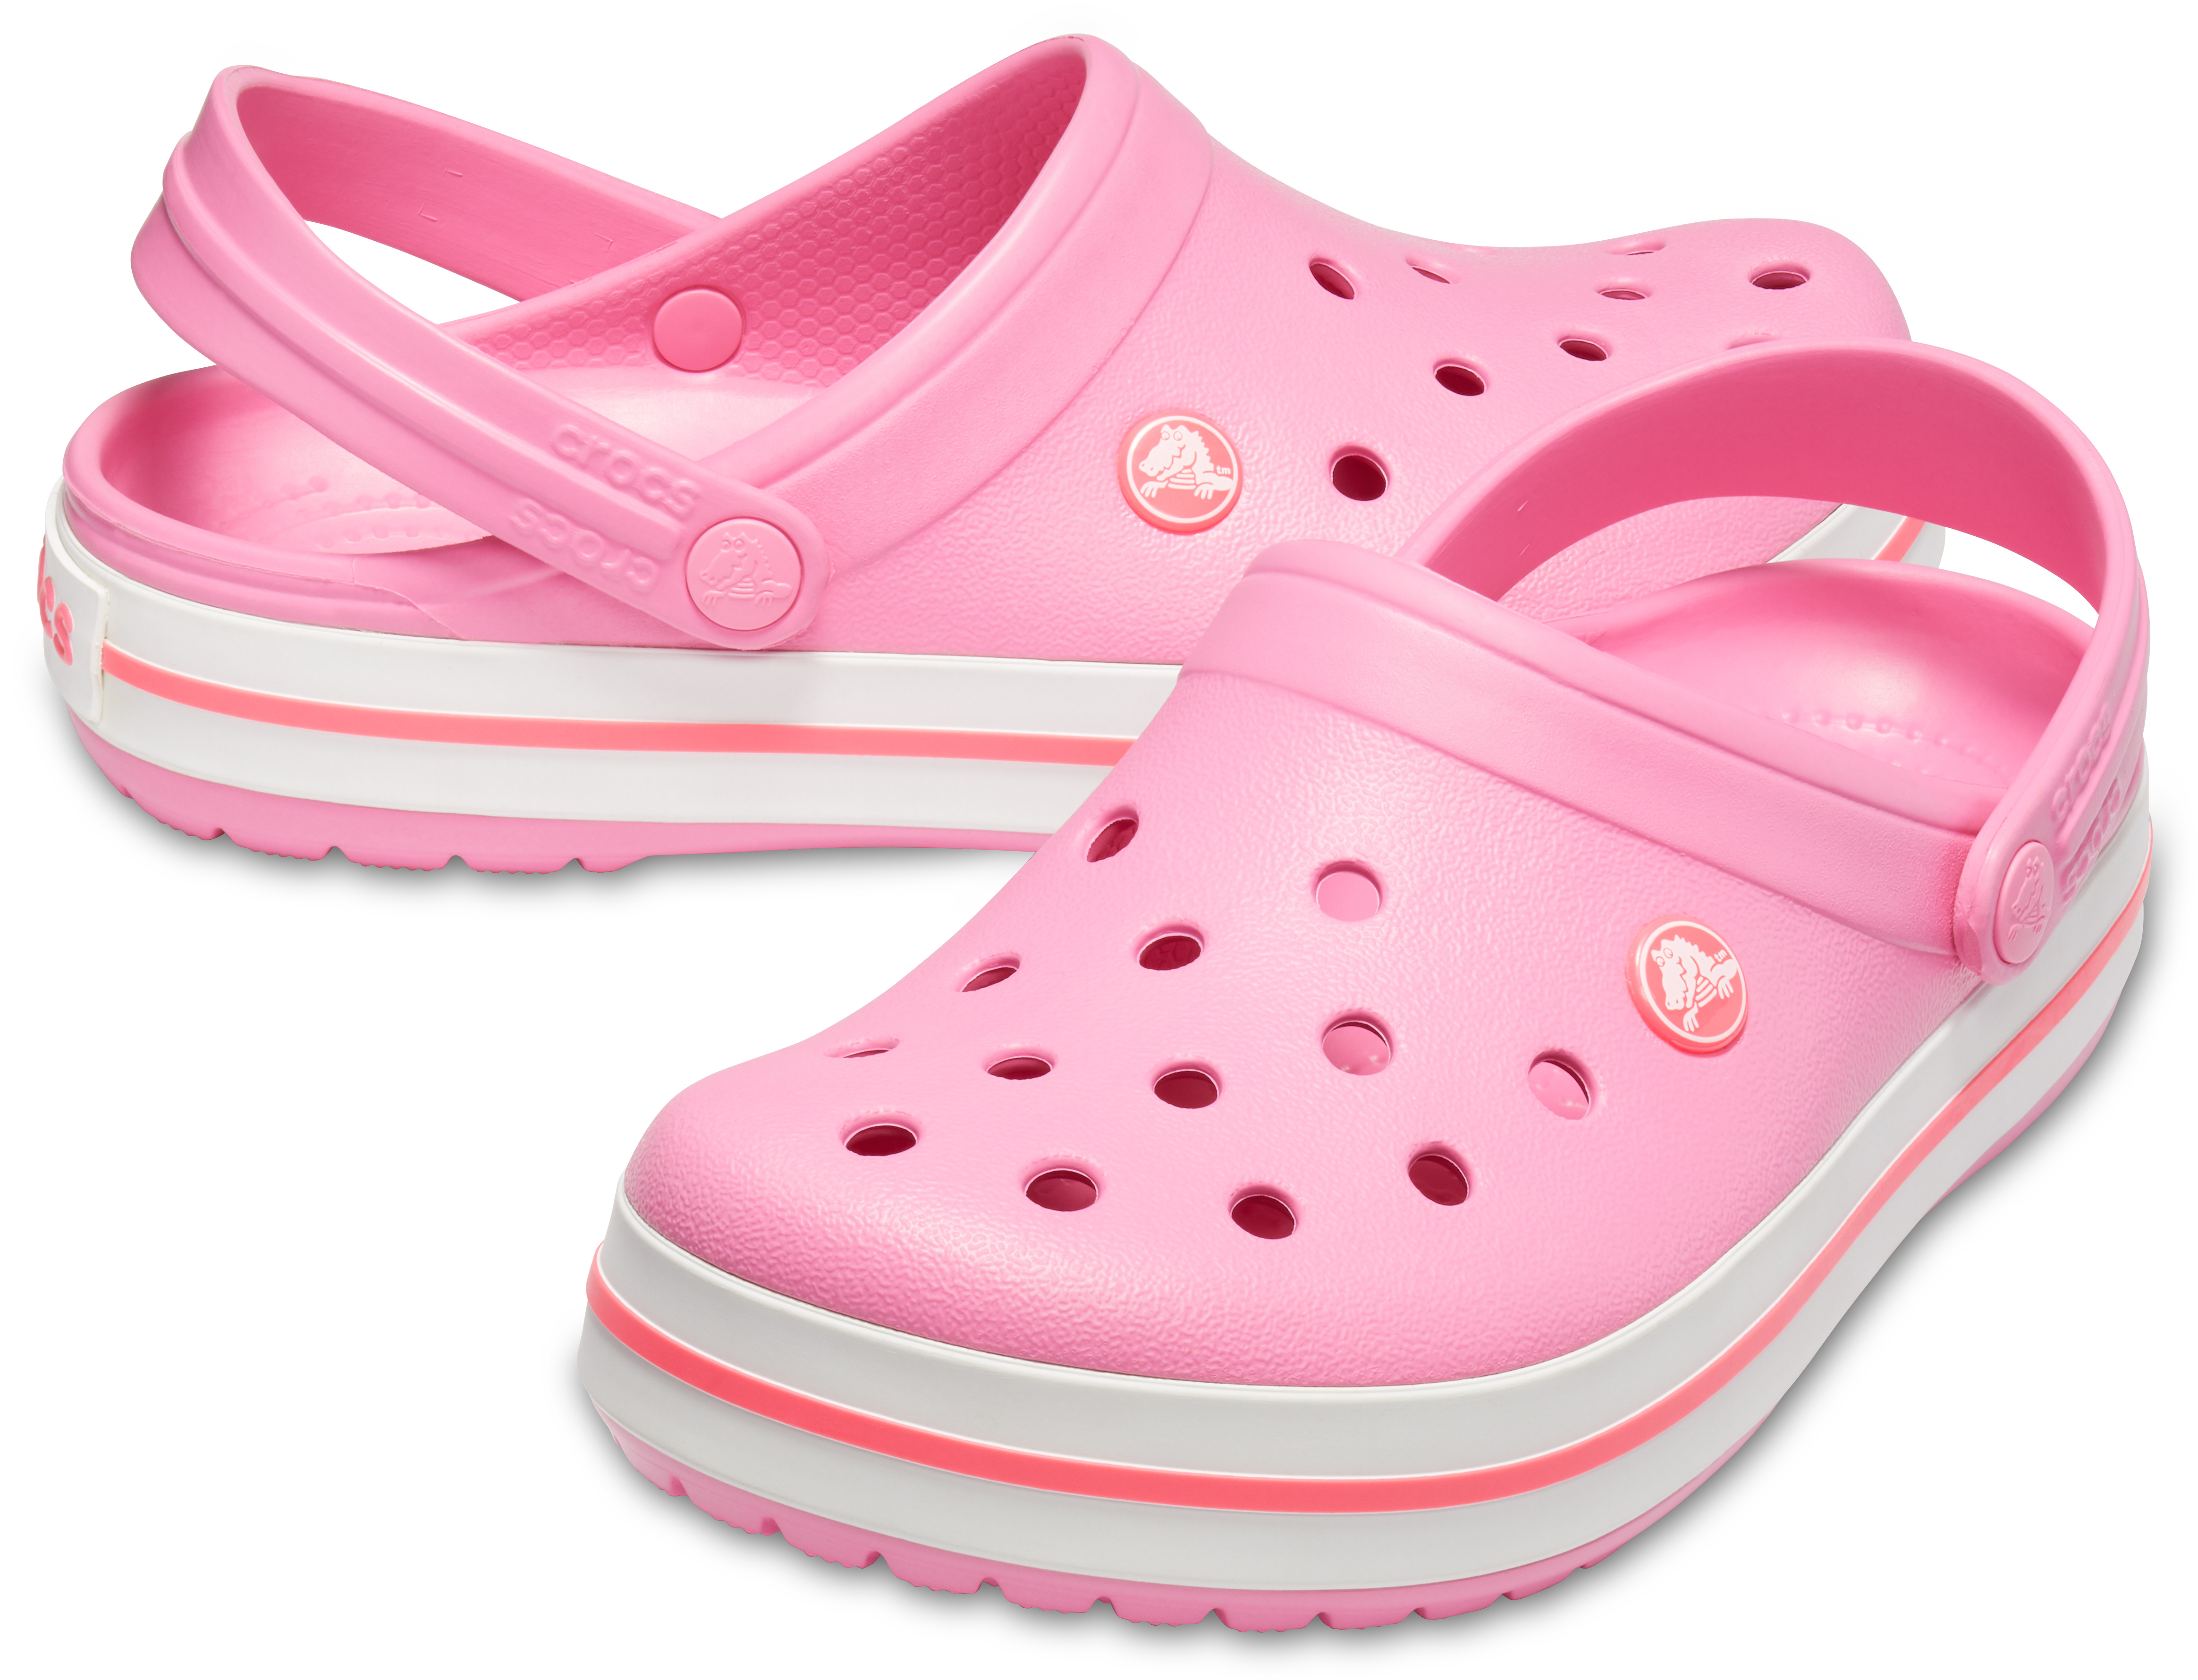 Giày lười Crocs Crocband unisex 11016 - Hồng nhạt - M8W10